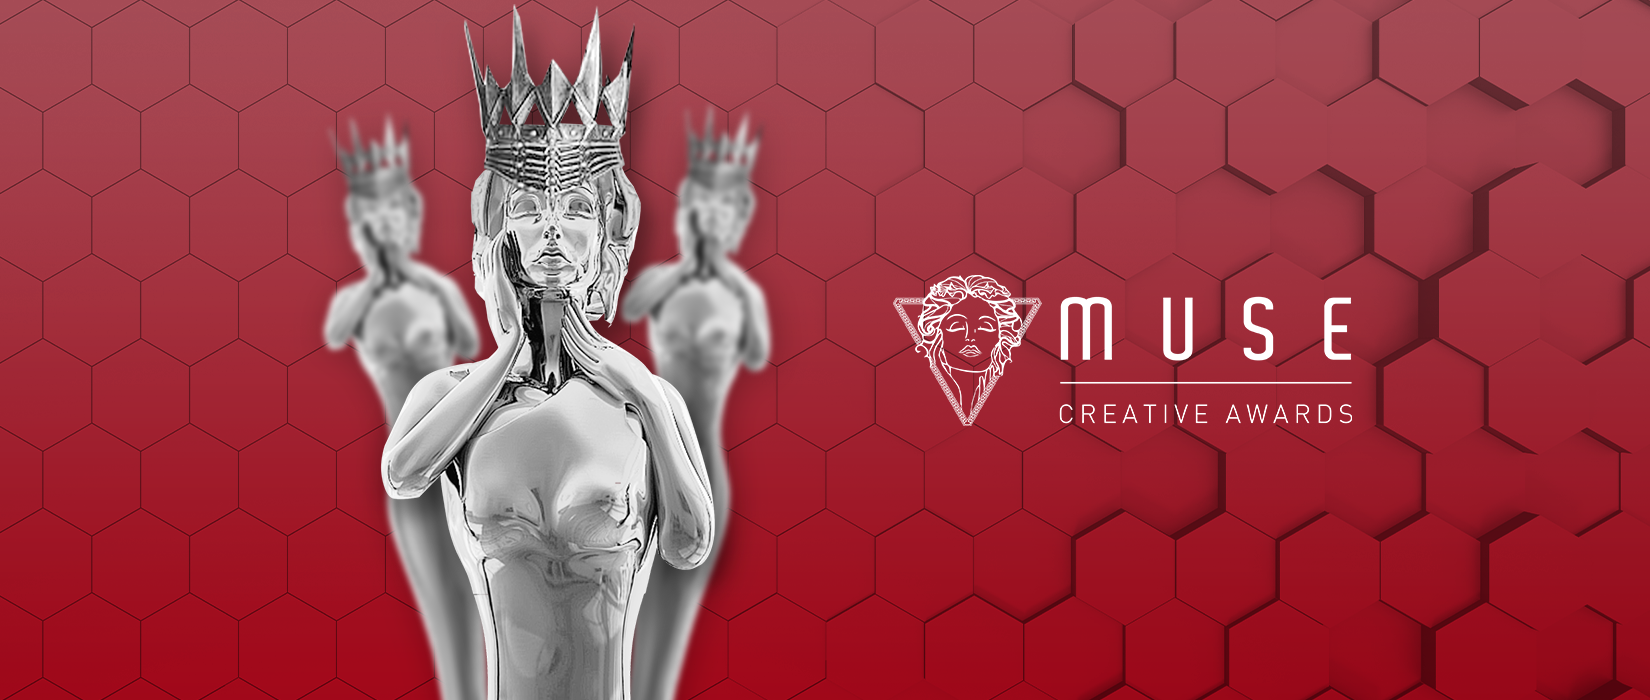 Reklam5, Muse Creative Awards’taki Başarısıyla Adından Söz Ettirmeye Devam Ediyor!